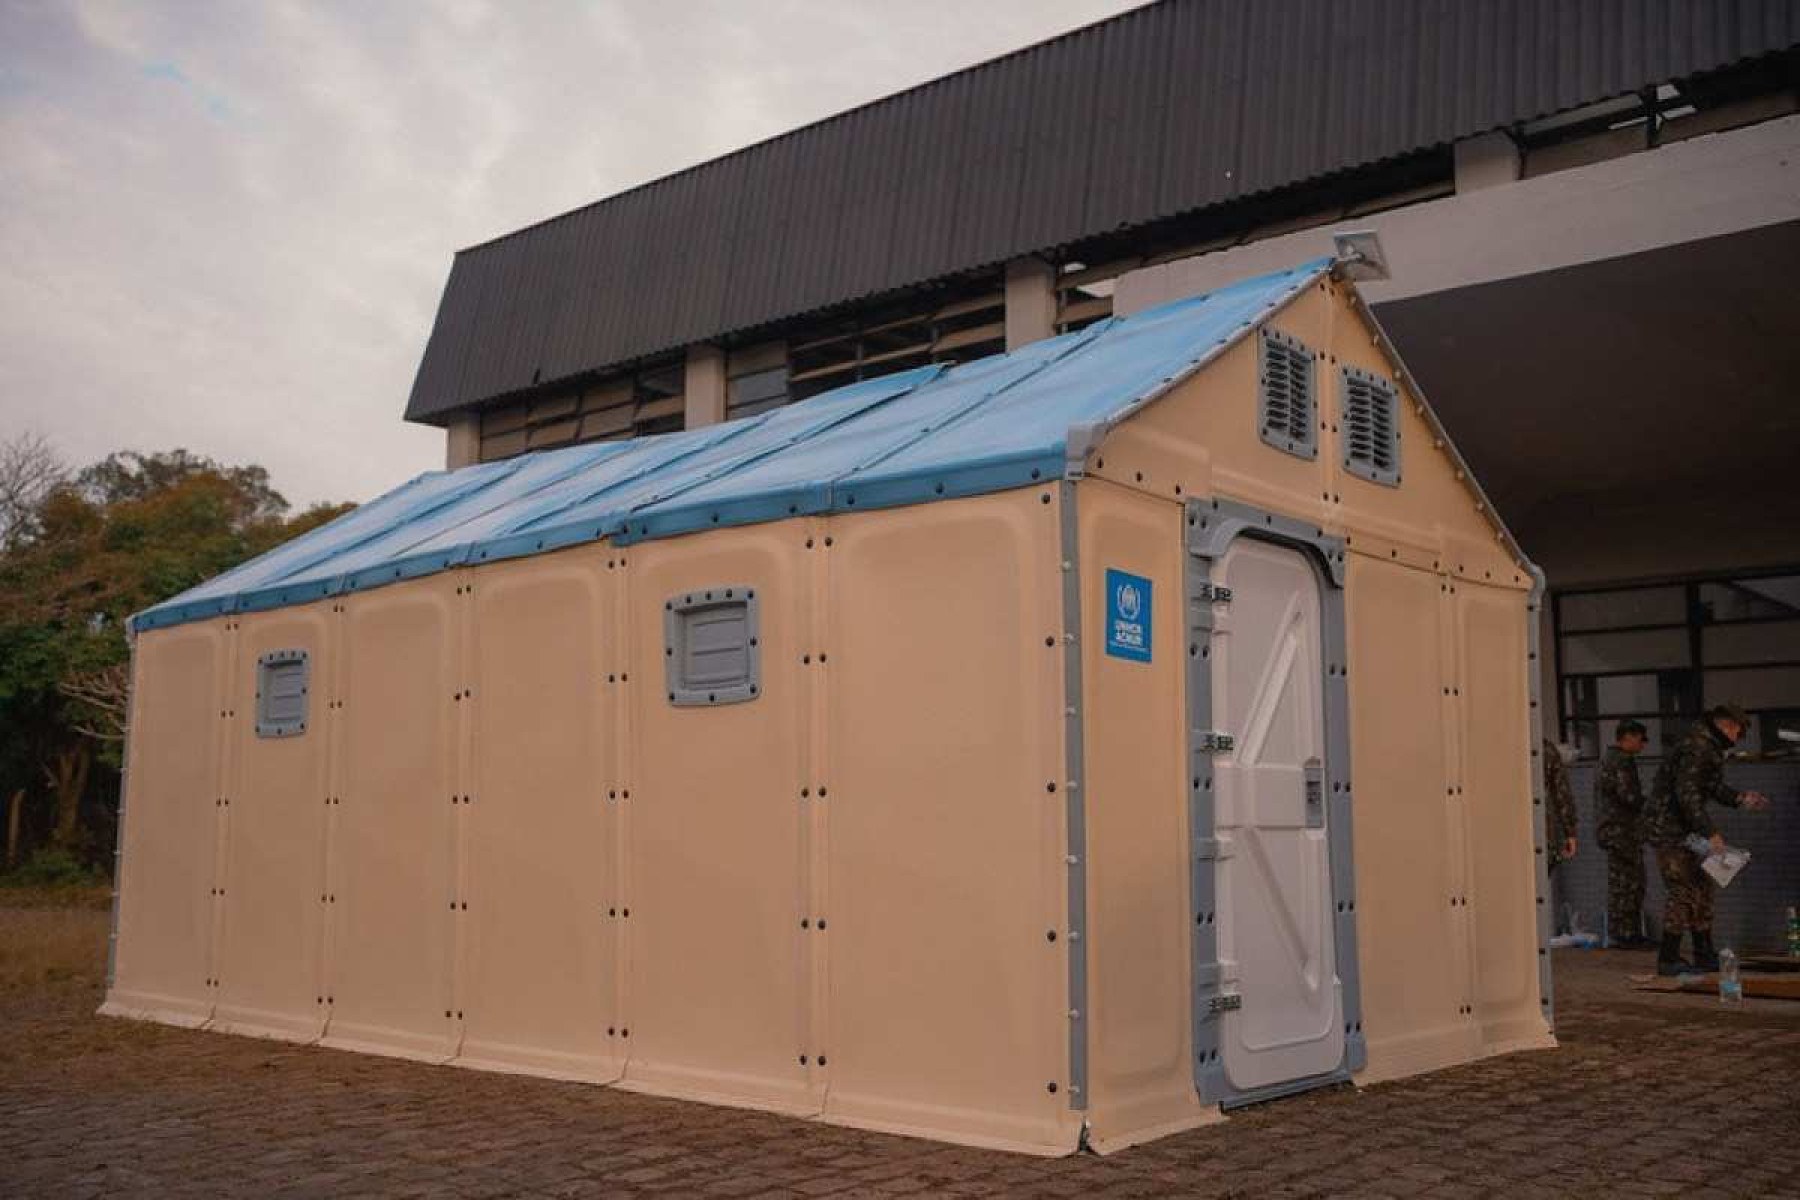 As casas provisórias anunciadas pelo governo do RS serão parecidas com as que foram doadas pela Agência da ONU para refugiados (Acnur) aos Centros Humanitários do estado